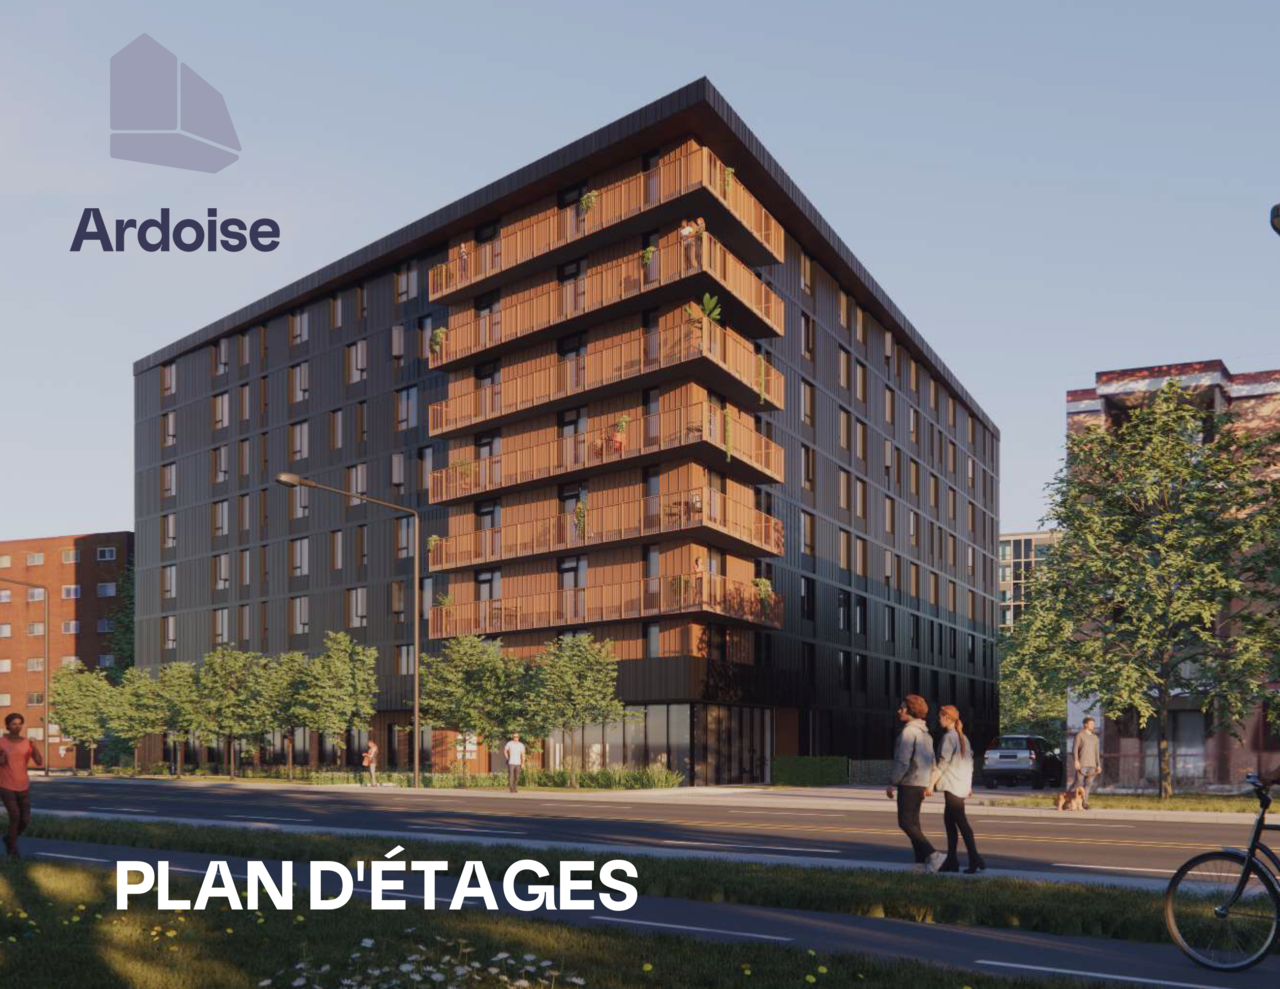 23년 10월, 캐나다 퀘벡주 소재 퀘벡시티에 200명 이상의 대학생들이 임차할 수 있는 205개 아파트 규모의 Ardoise 기숙사가 완공됐다./제공=우틸